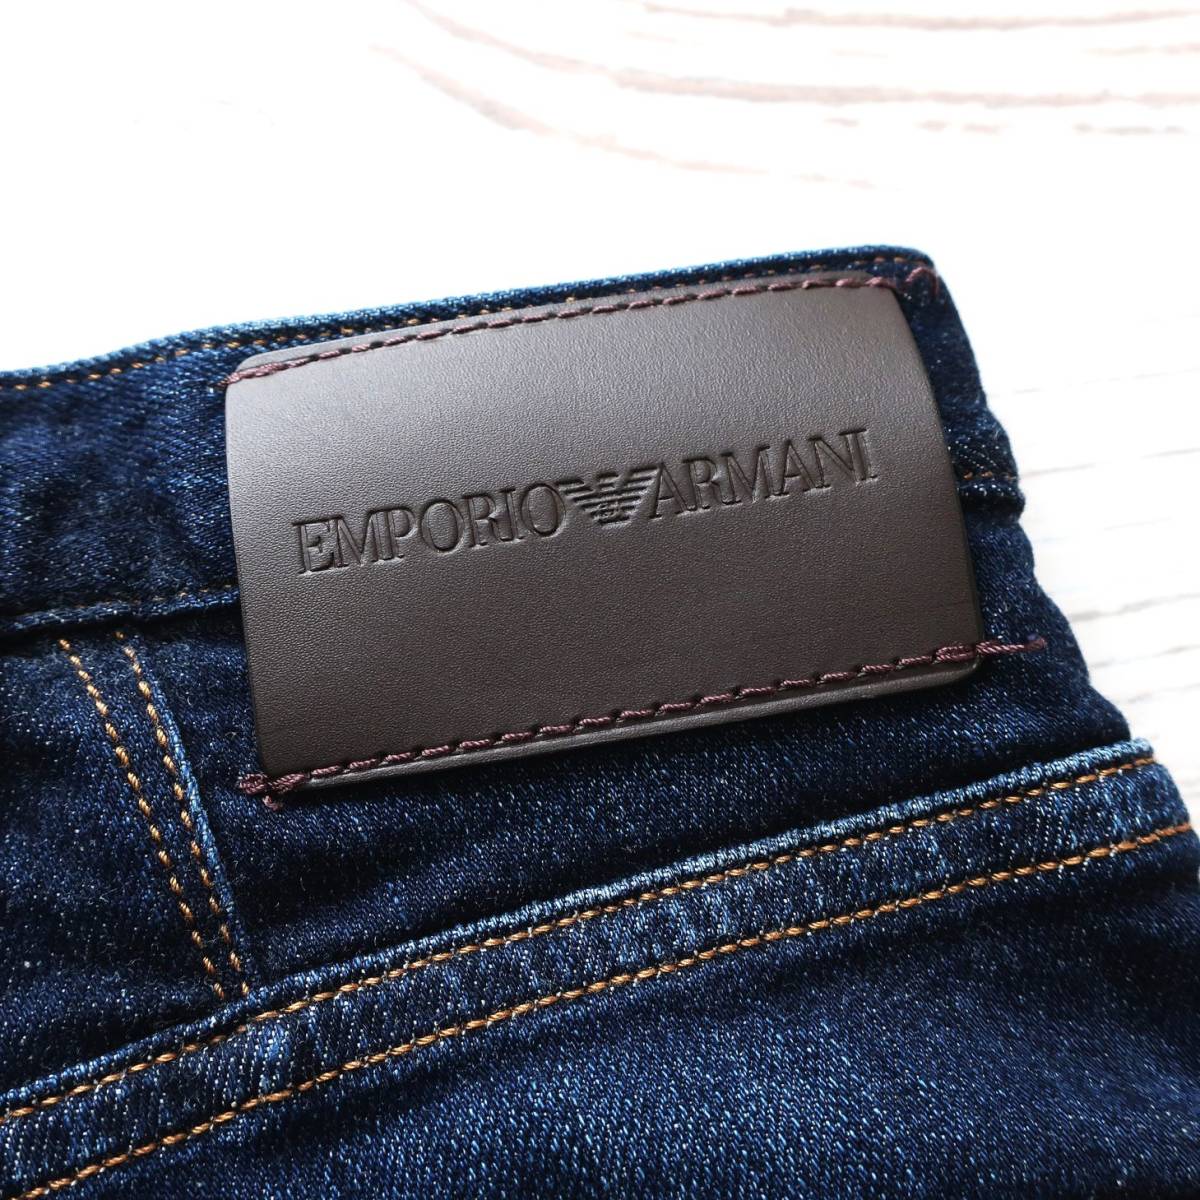  новый товар EMPORIO ARMANI постоянный Fit J21 джинсы Denim стрейч распорка индиго голубой Emporio Armani W29 S размер 